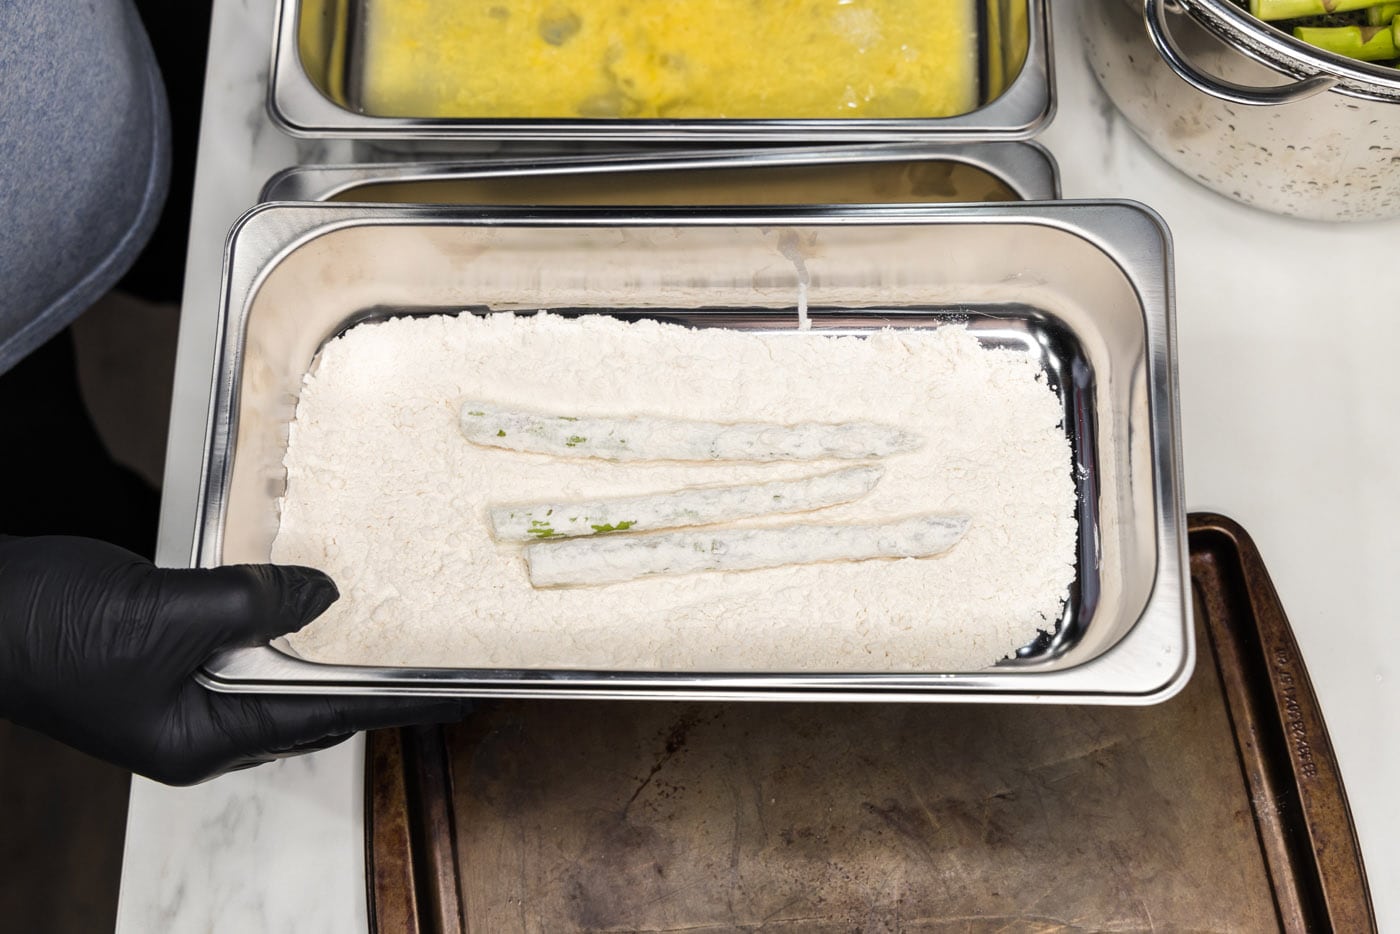 dipping asparagus spears into flour